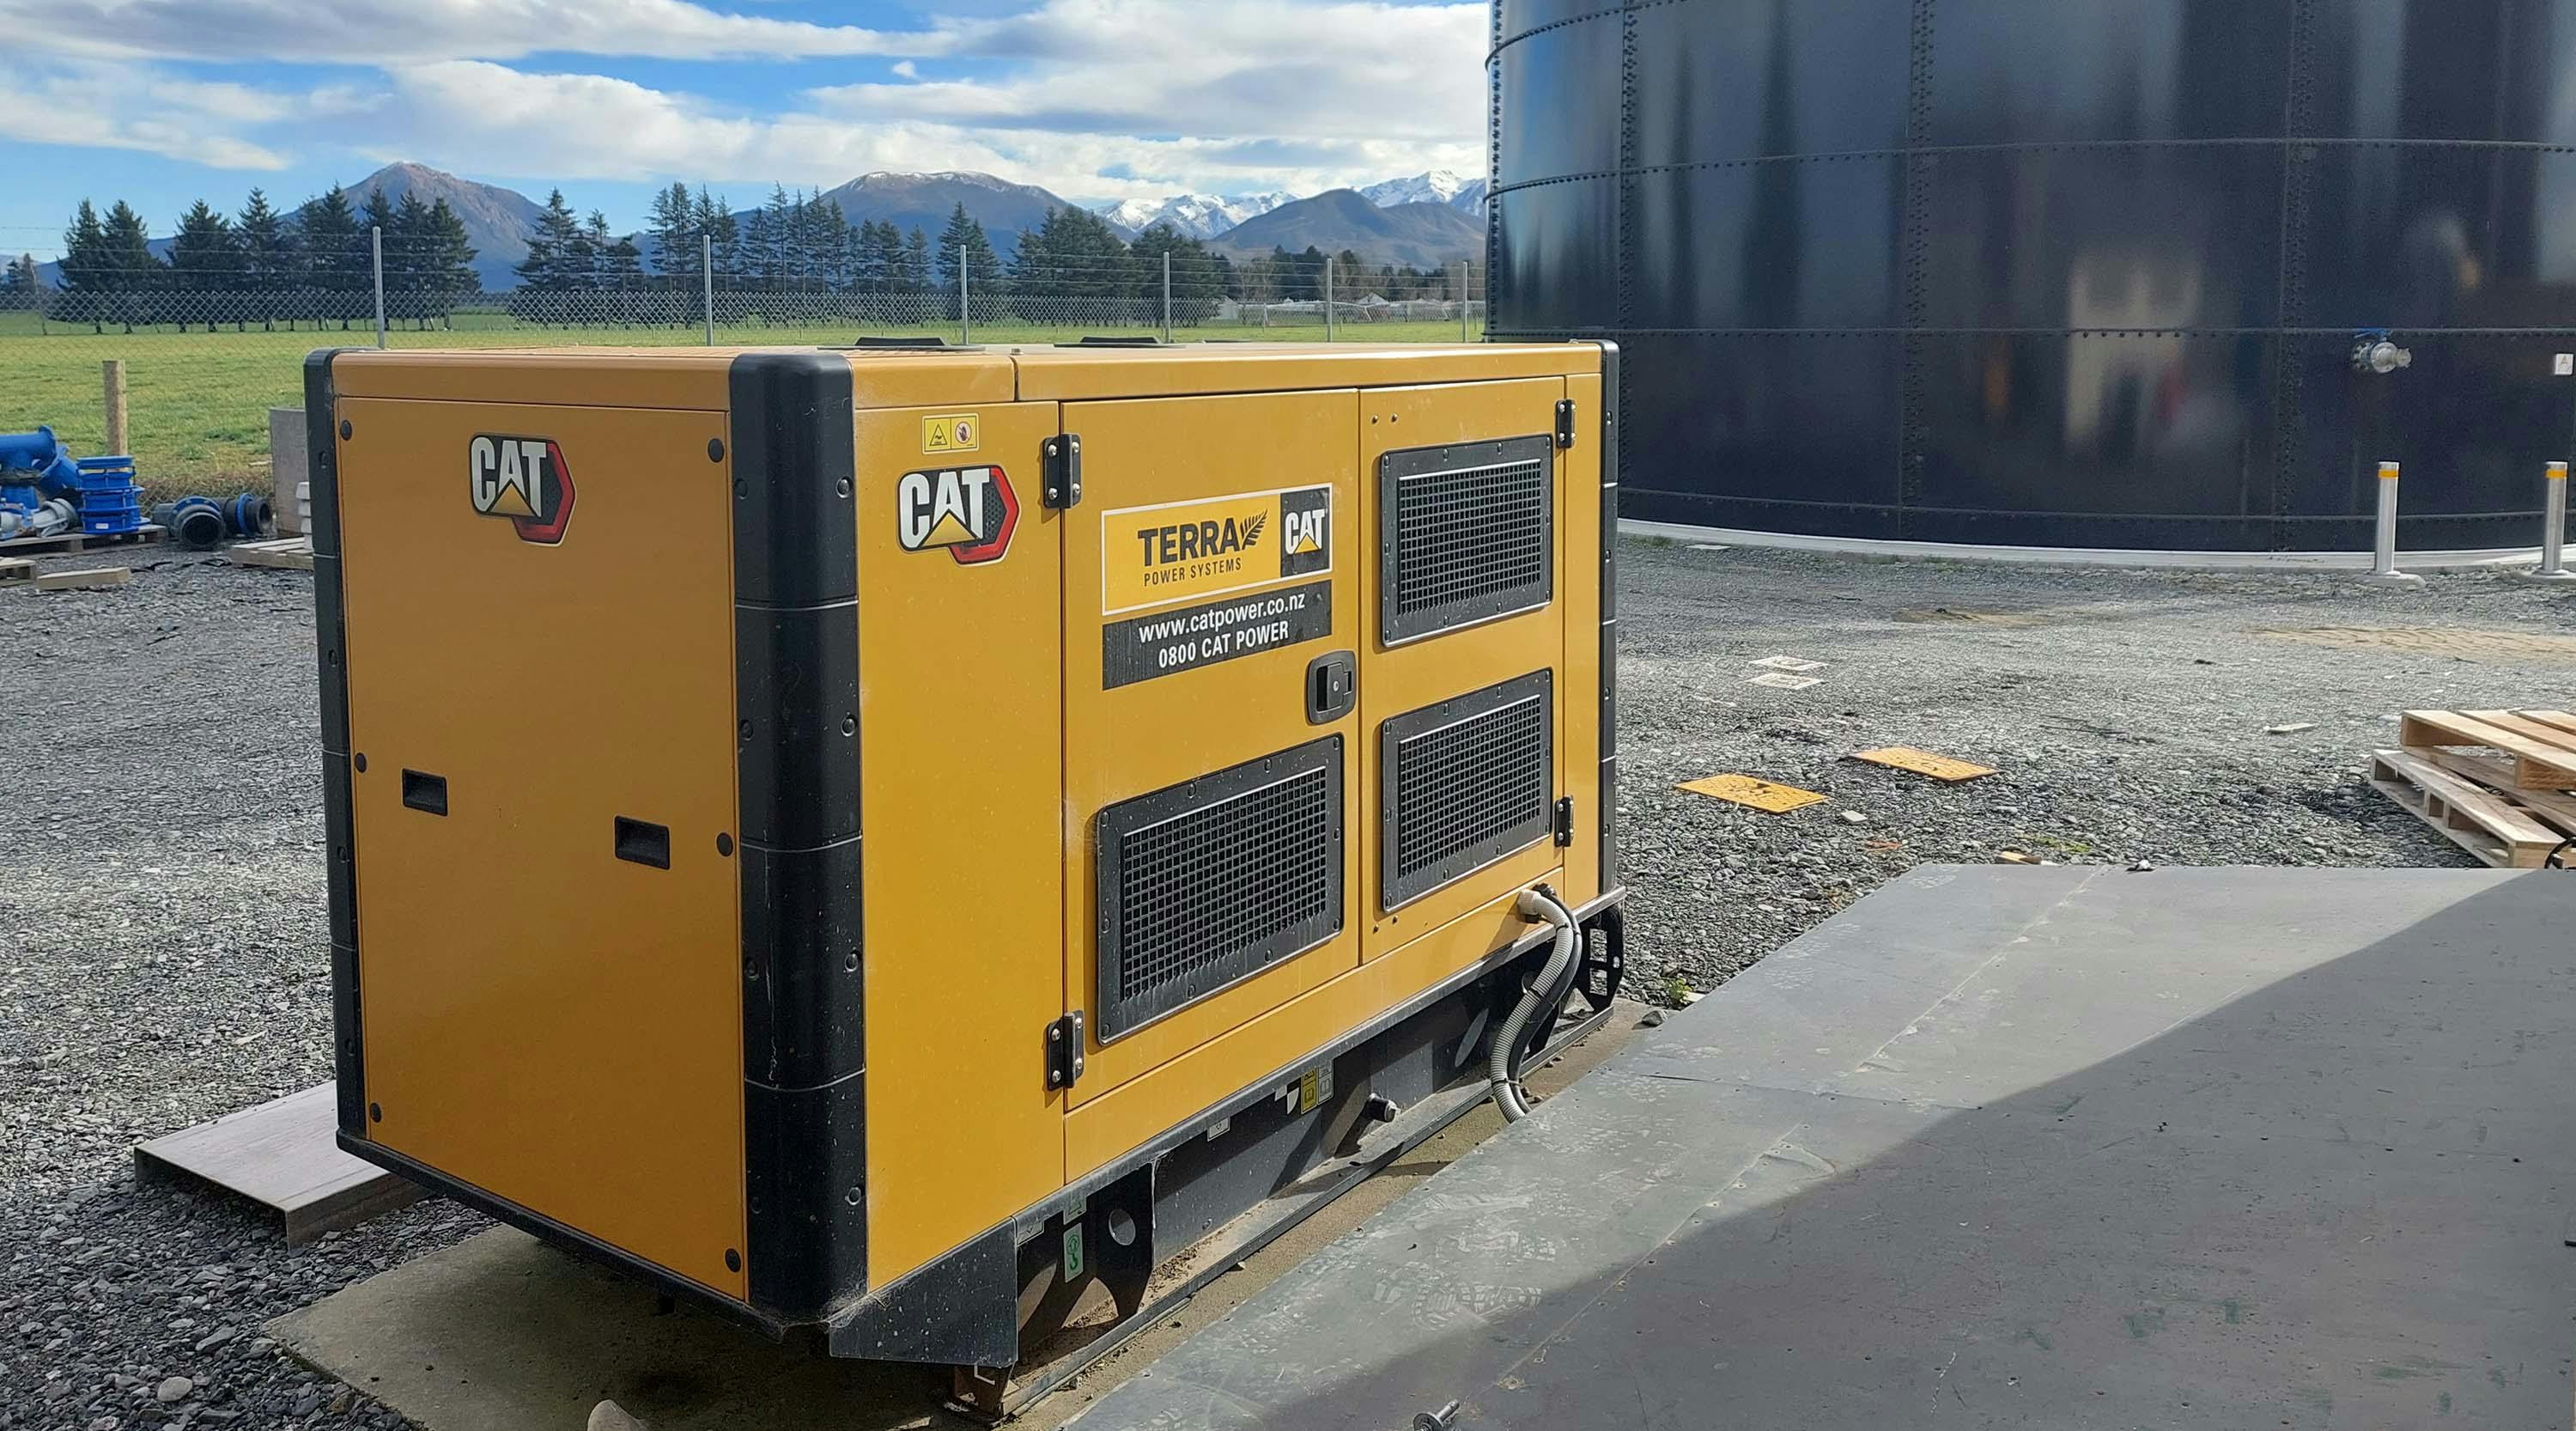 Terra Cat Power Generator Set in front of water tank